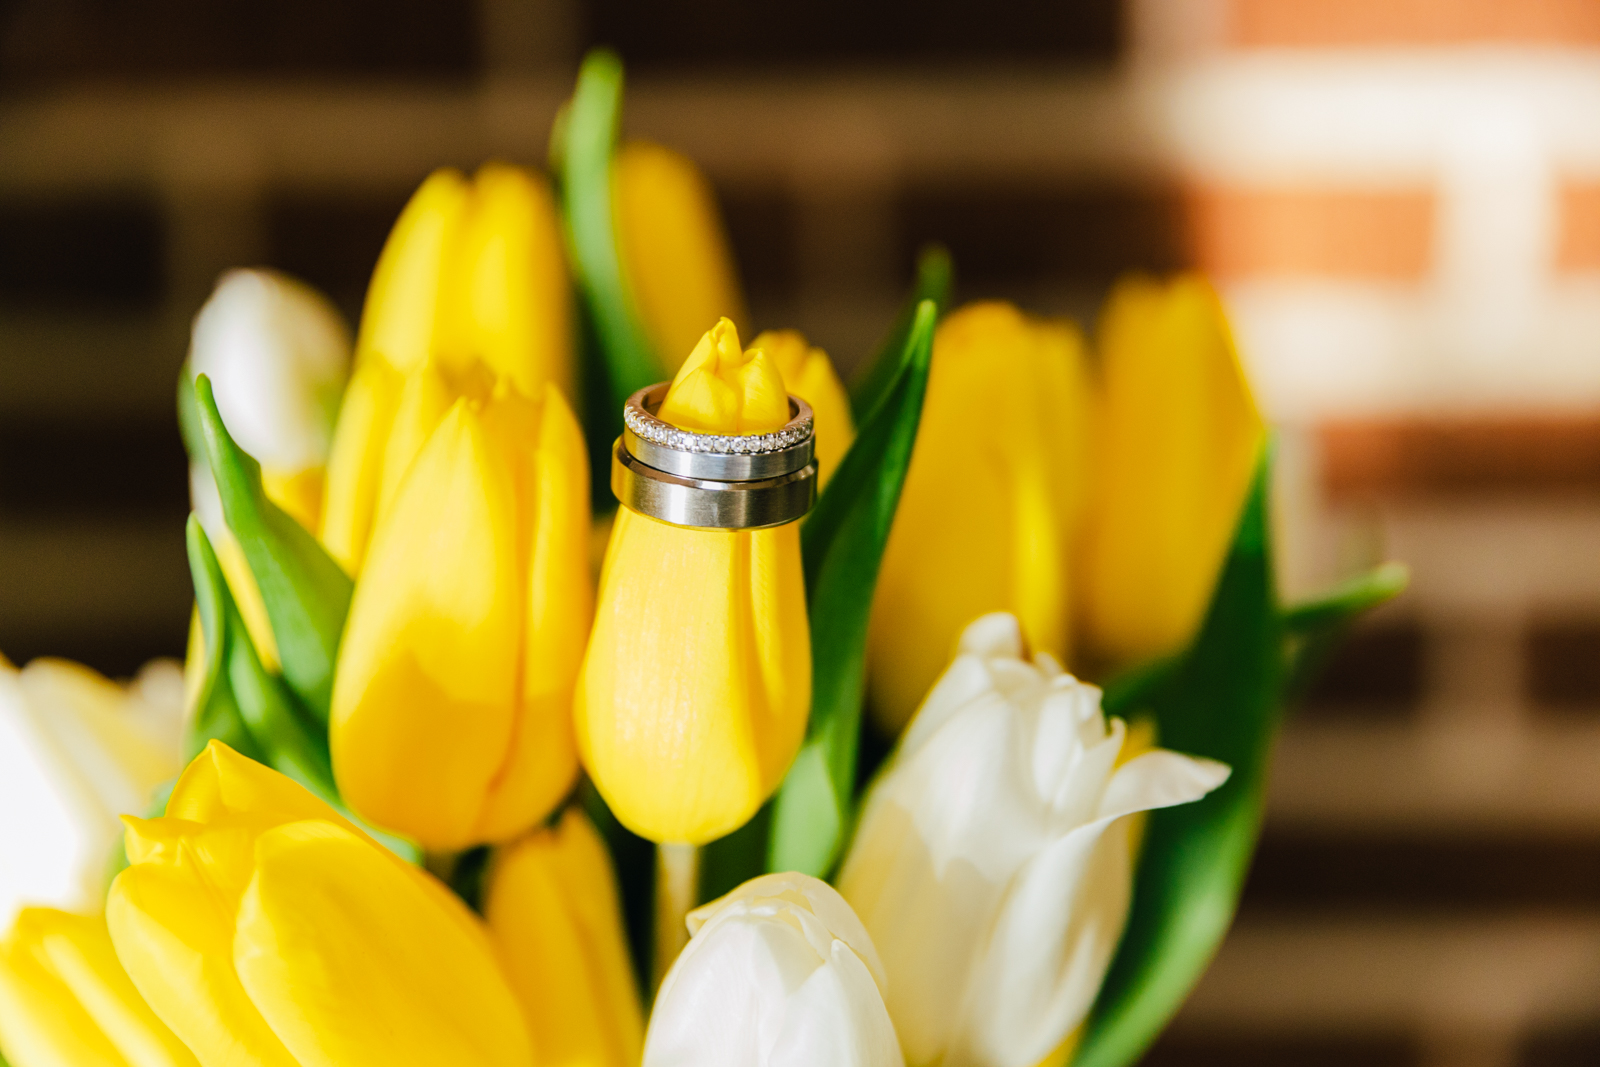 Jackson Hole wedding photographer captures ring on tulips